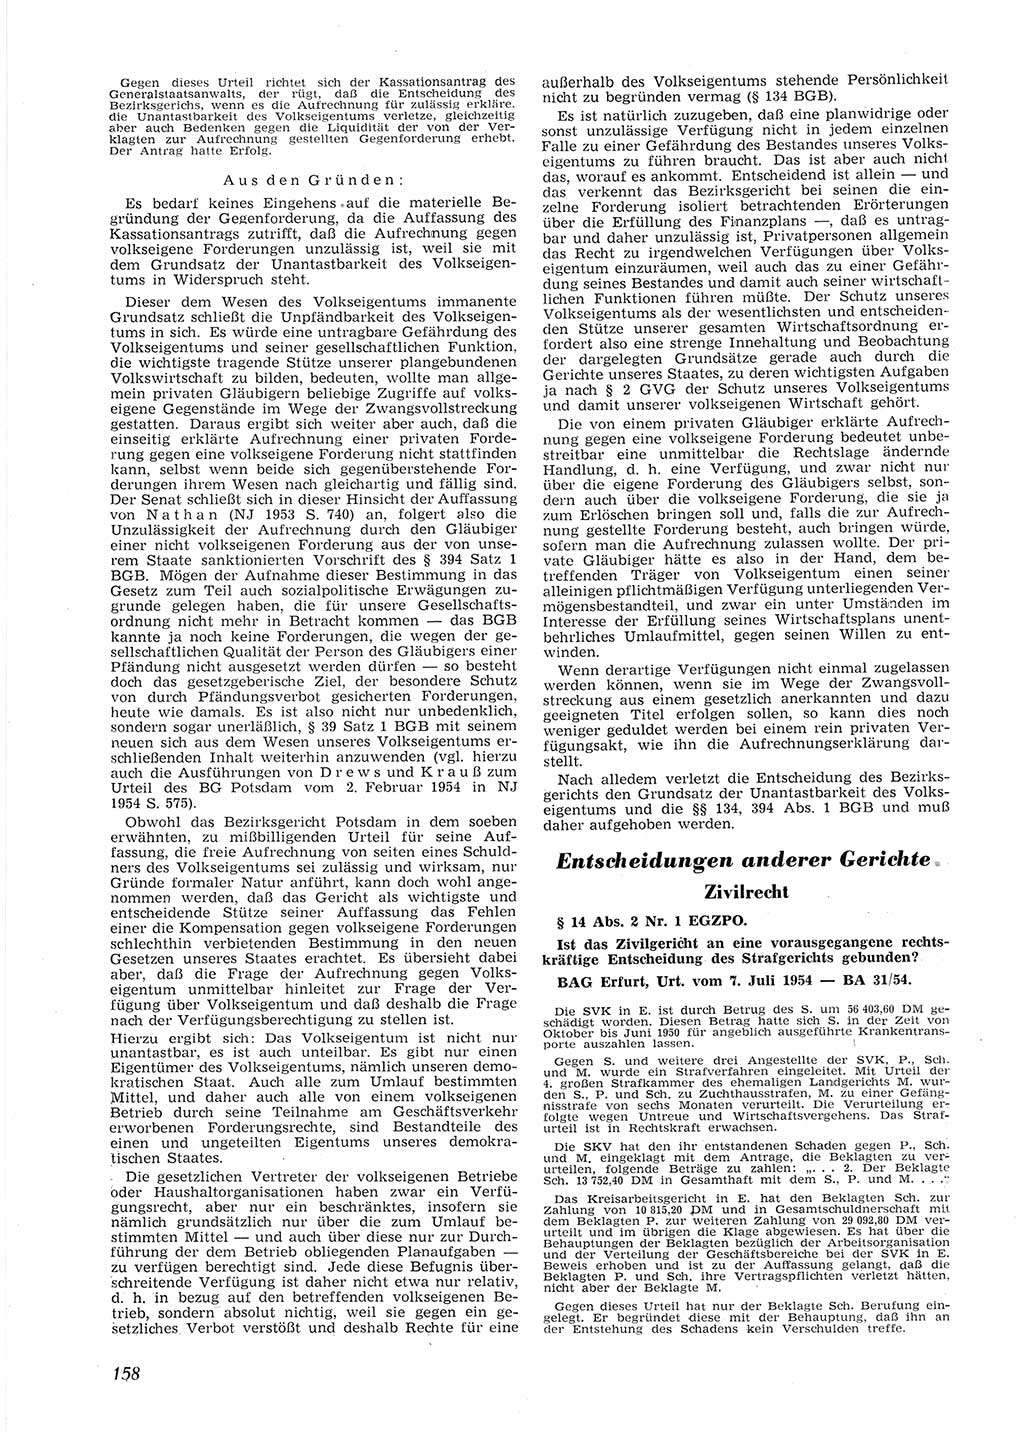 Neue Justiz (NJ), Zeitschrift für Recht und Rechtswissenschaft [Deutsche Demokratische Republik (DDR)], 9. Jahrgang 1955, Seite 158 (NJ DDR 1955, S. 158)